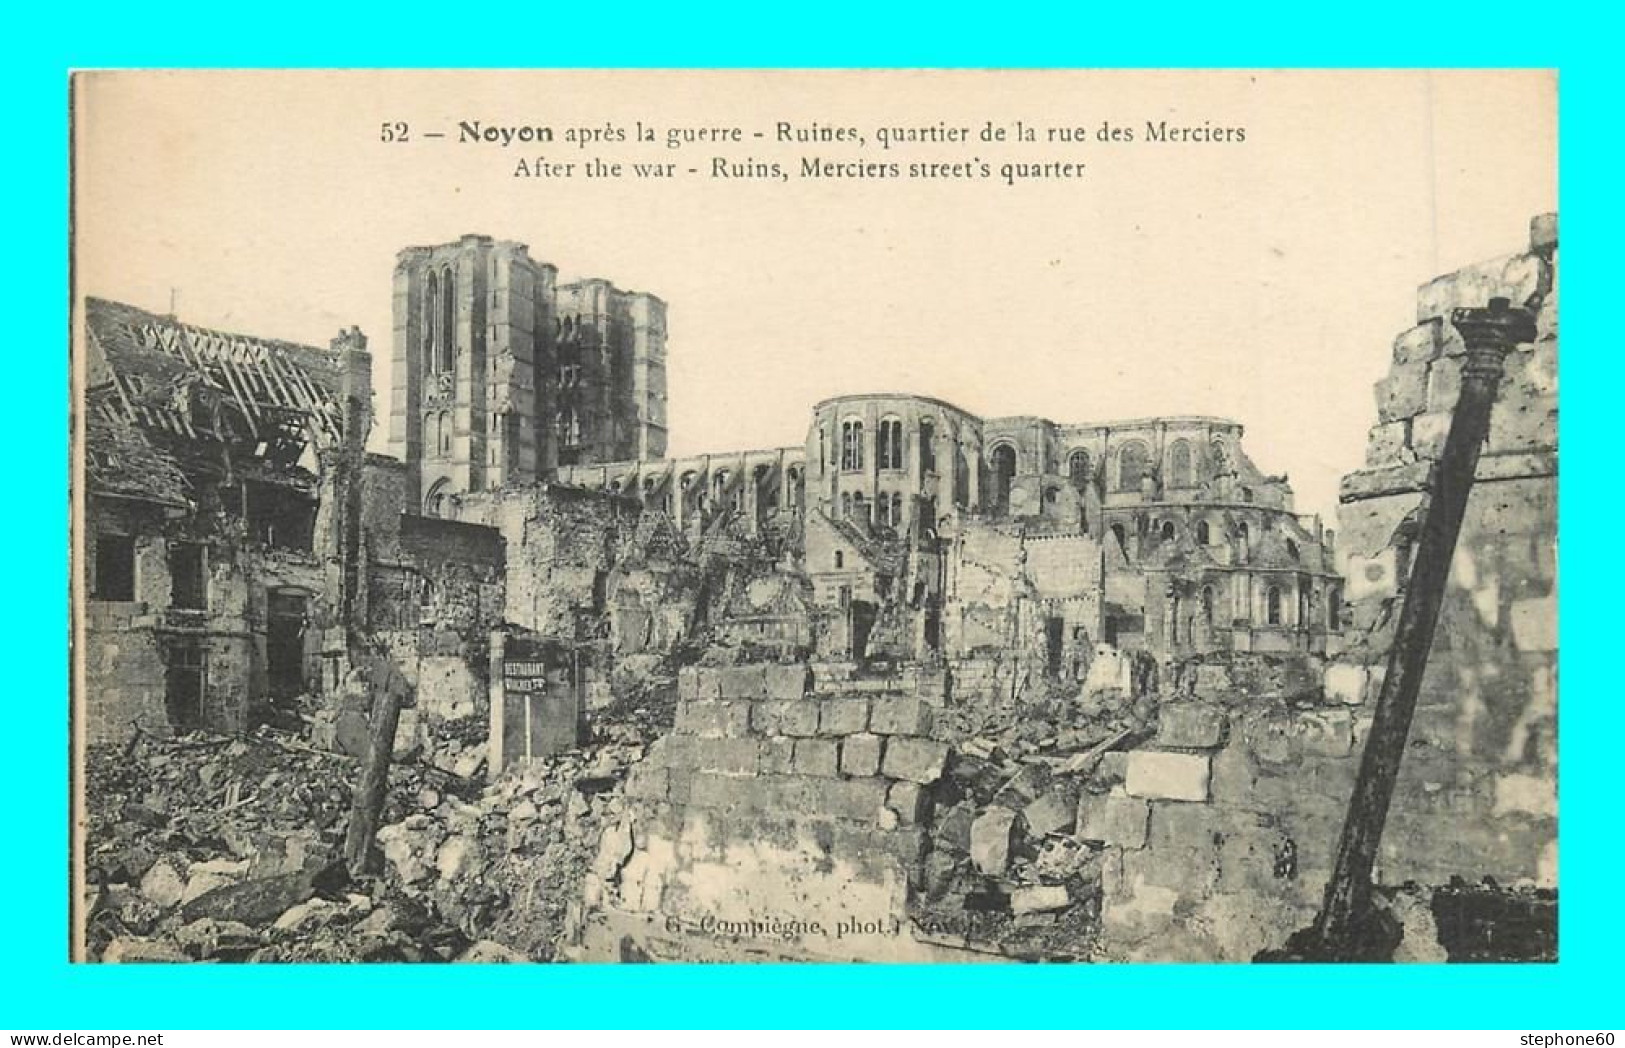 A907 / 155 60 - NOYON Apres La Guerre Ruines Quartier De La Rue Des Merciers - Noyon